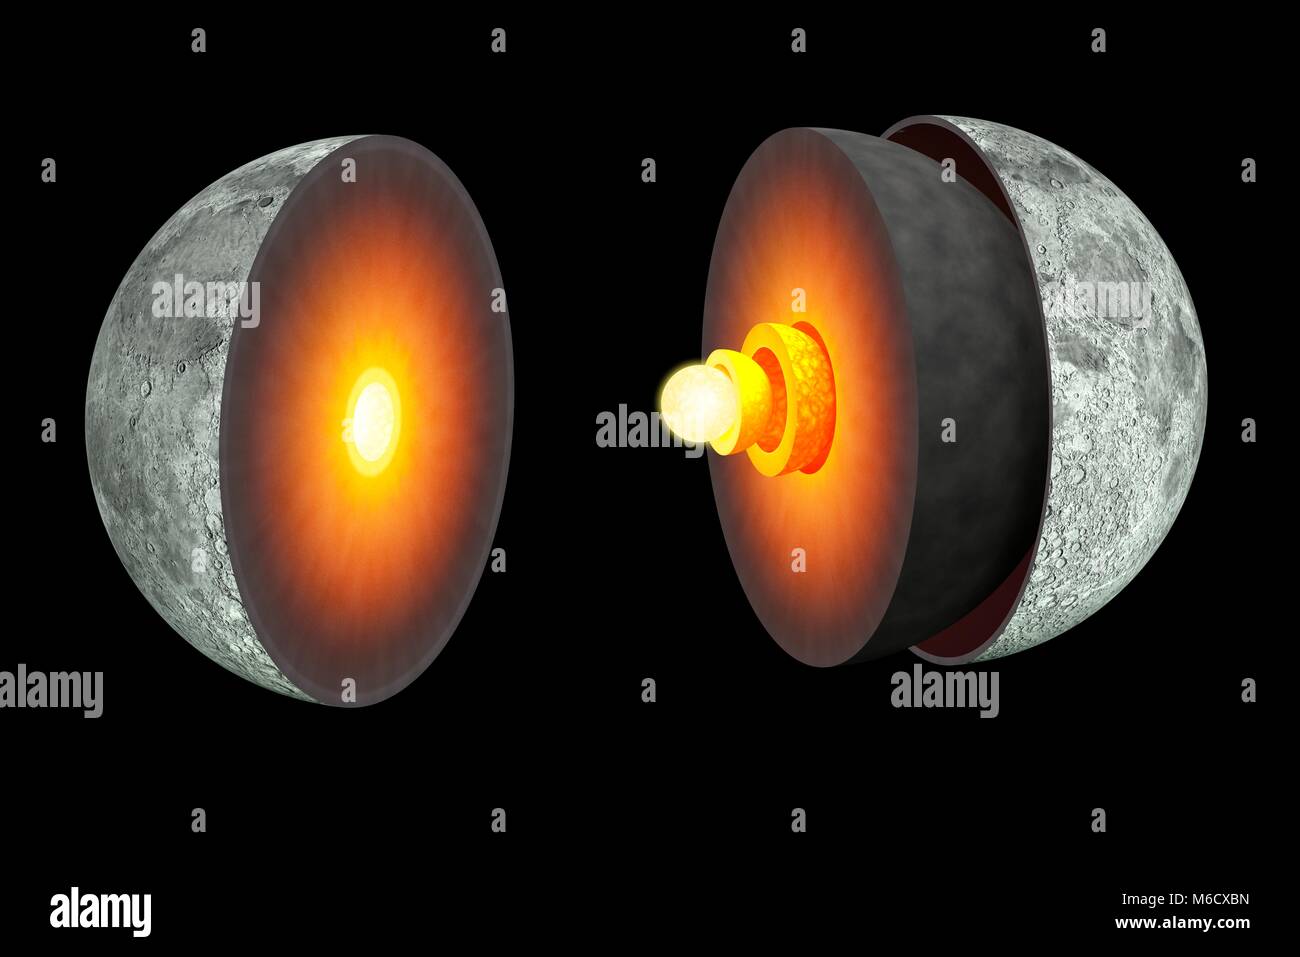 Schéma montrant l'intérieur de la Lune. La couche externe, l'écorce terrestre, est d'environ 45 milles (70 km) d'épaisseur. C'est plus épaisse que la croûte terrestre, qui refroidi jusqu'à un rythme beaucoup plus lent. Sous la croûte est un épais manteau de silicate, puis une zone de fusion partielle d'un rayon de 480 km. C'est probablement là où se produisent. moonquakes Les courants de pensée, fondé sur un nouvel examen des données sismomètre lunaire Apollo, c'est que le noyau, qu'on croyait solide, est maintenant composé d'une composante externe liquide (330 km de rayon) et un solide intérieur (240 km). Banque D'Images